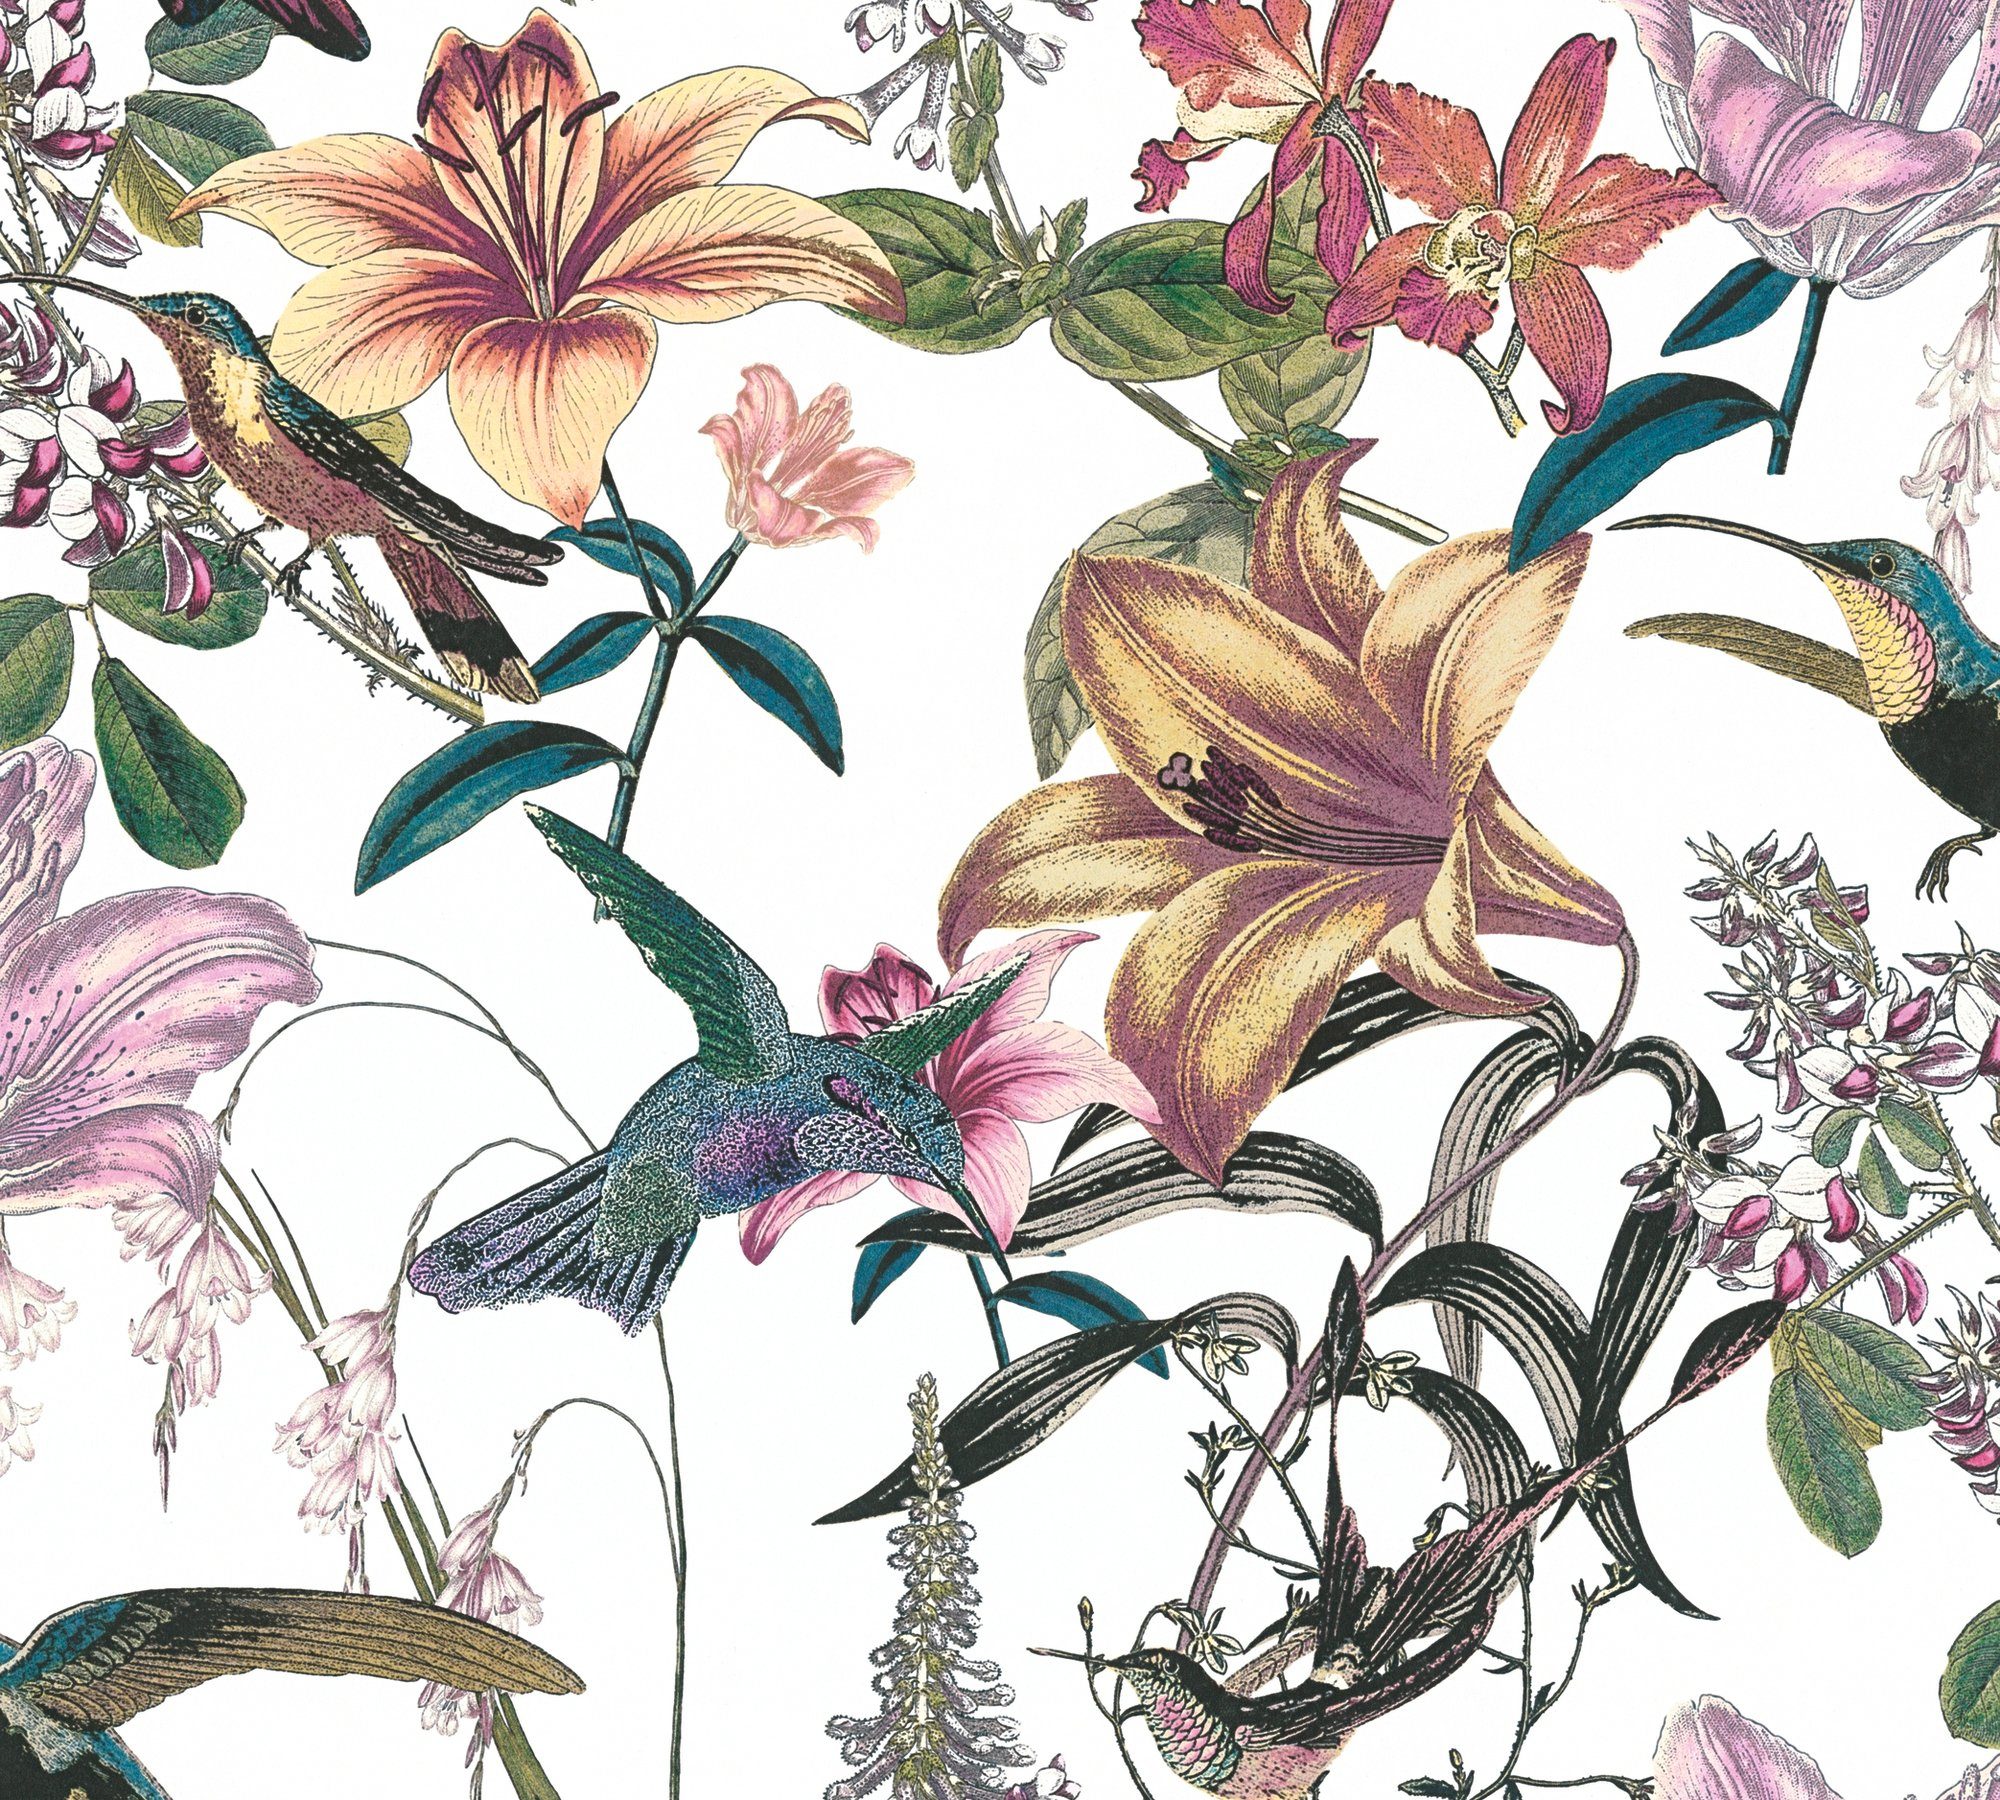 tropisch, glatt, bunt/grün/gelb floral, Vliestapete botanisch, Vogeltapete Architects Tapete Chic, Jungle Blumen A.S. Création Paper